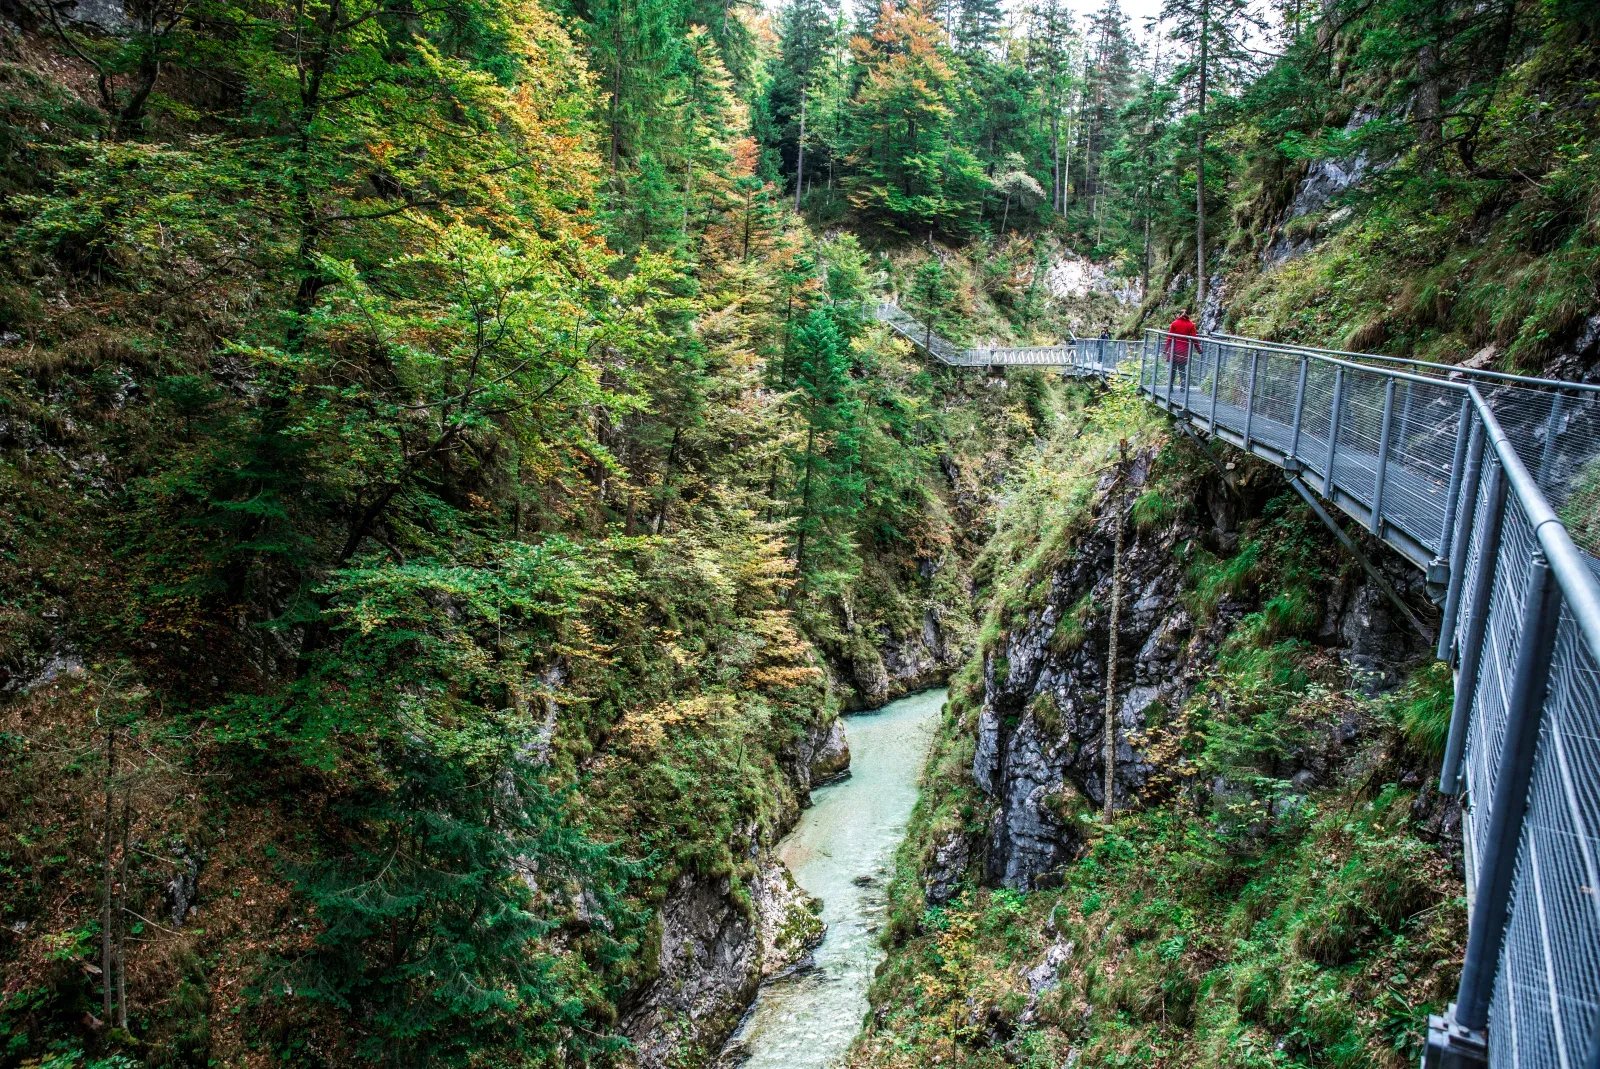 Gorges in Austria